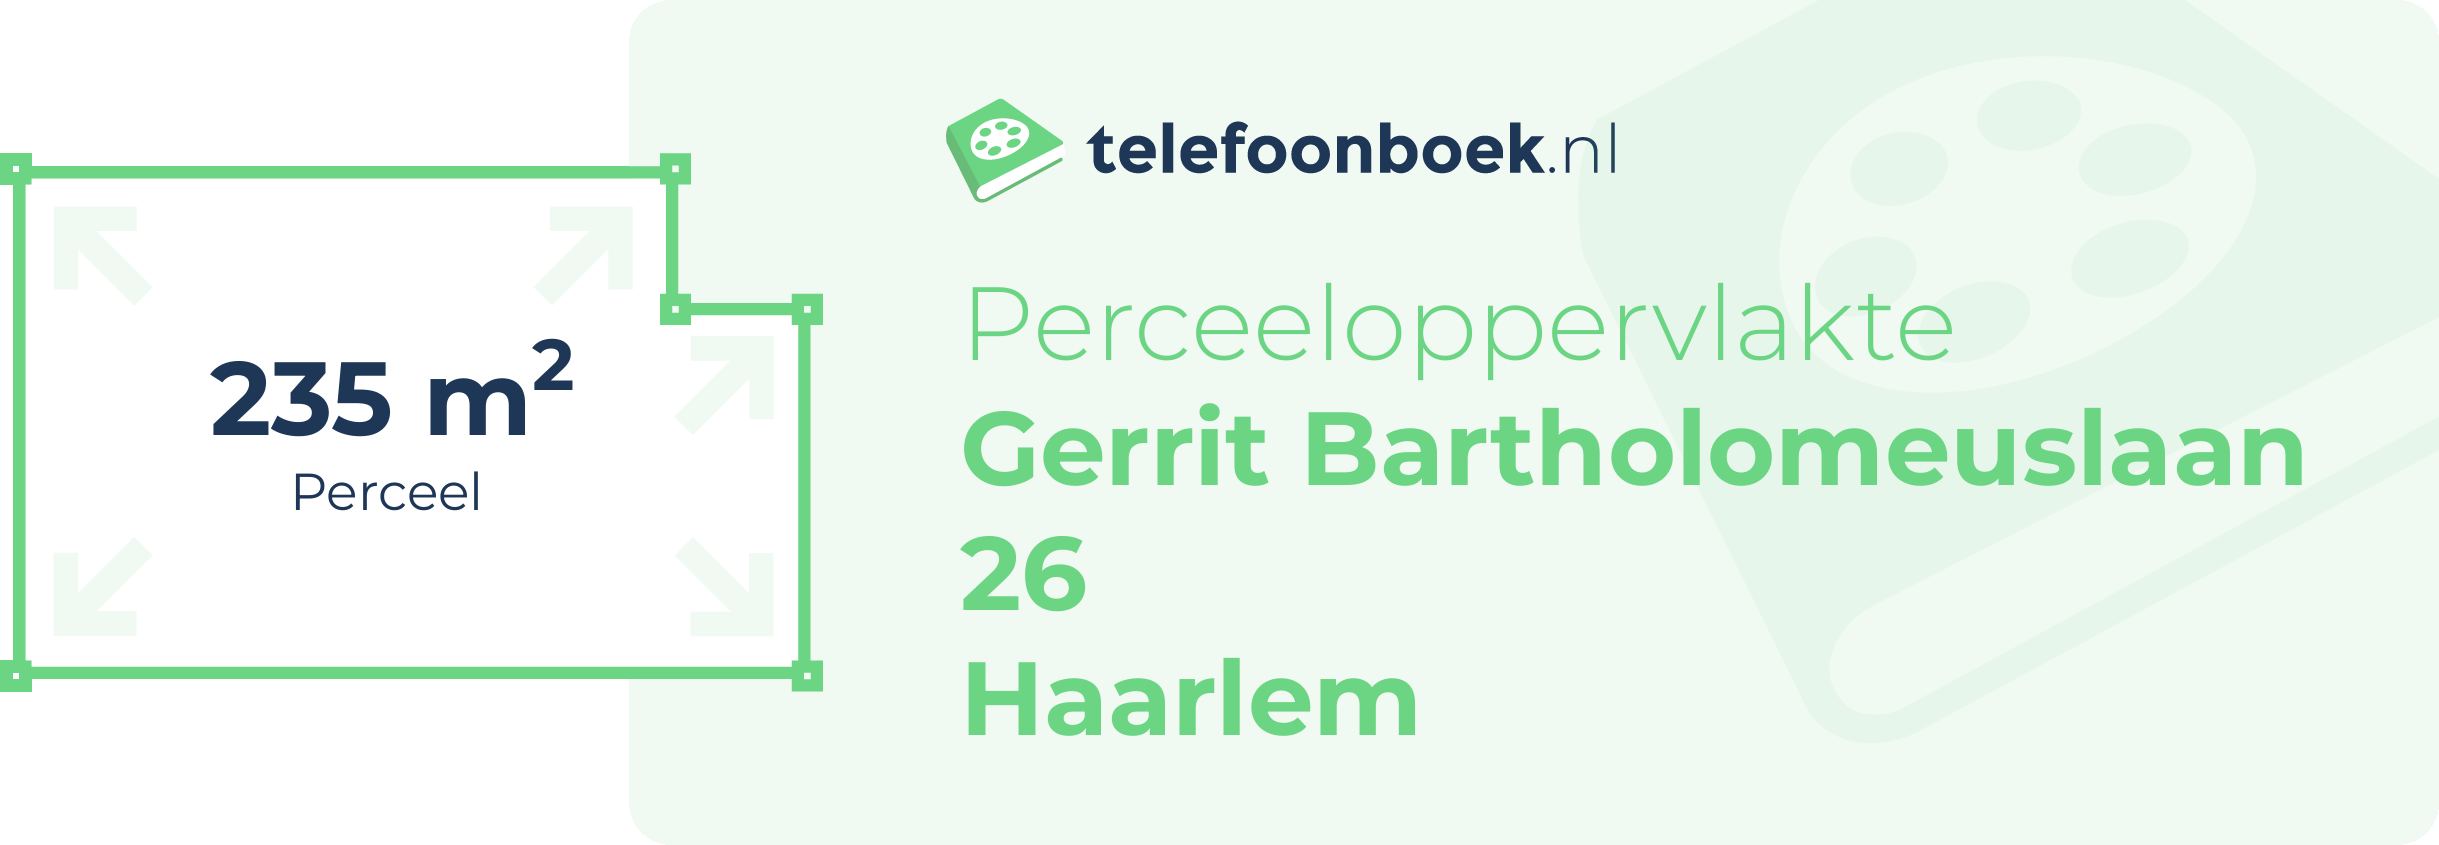 Perceeloppervlakte Gerrit Bartholomeuslaan 26 Haarlem